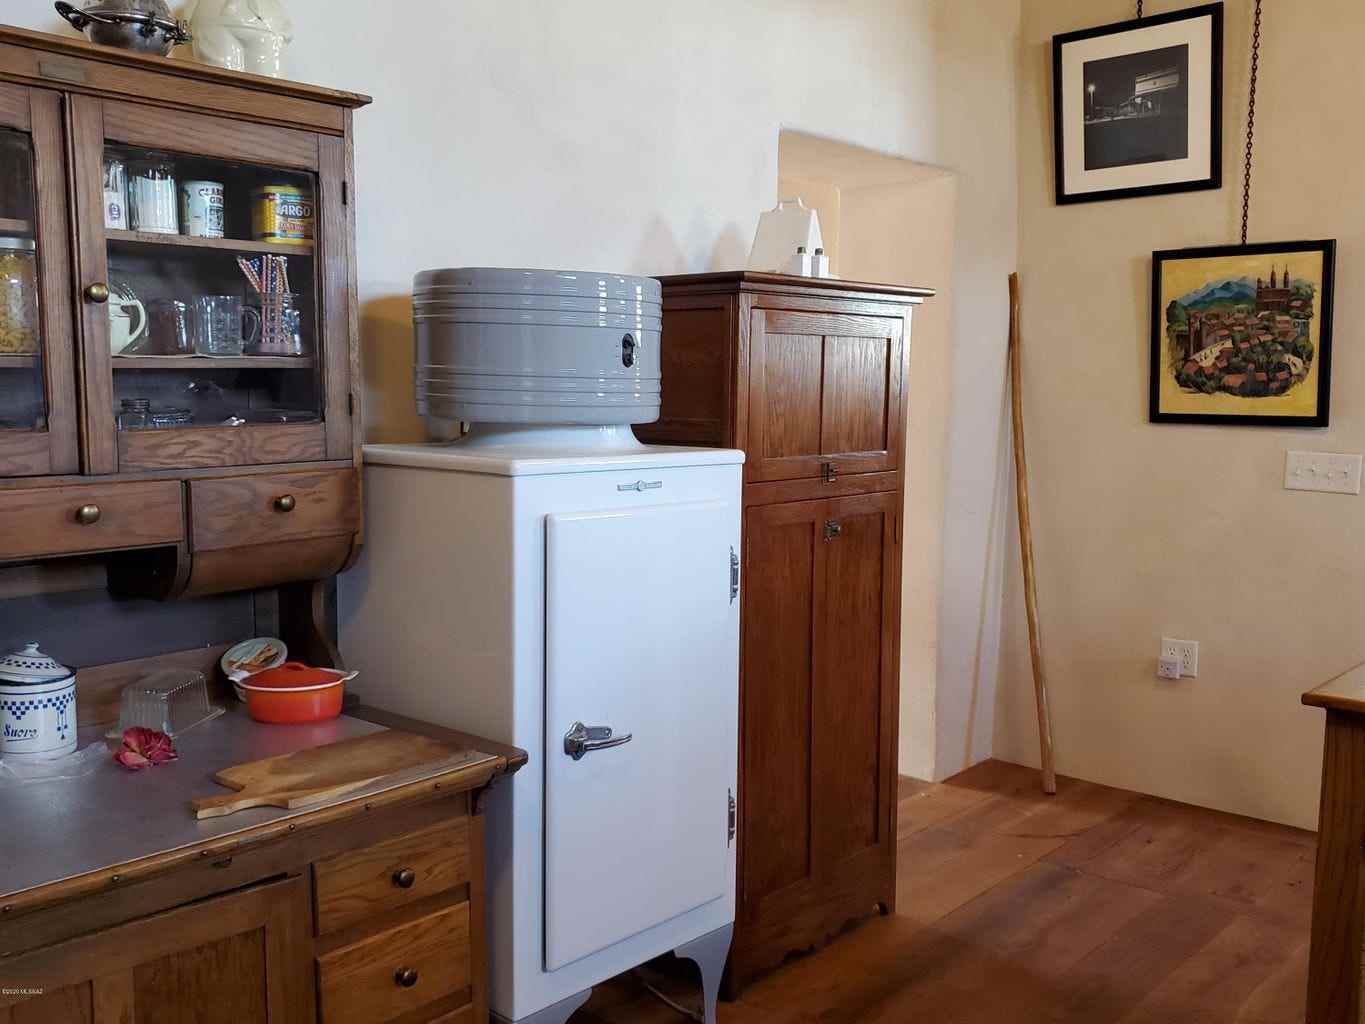 In der Küche befindet sich ein funktionierender antiker Kühlschrank.